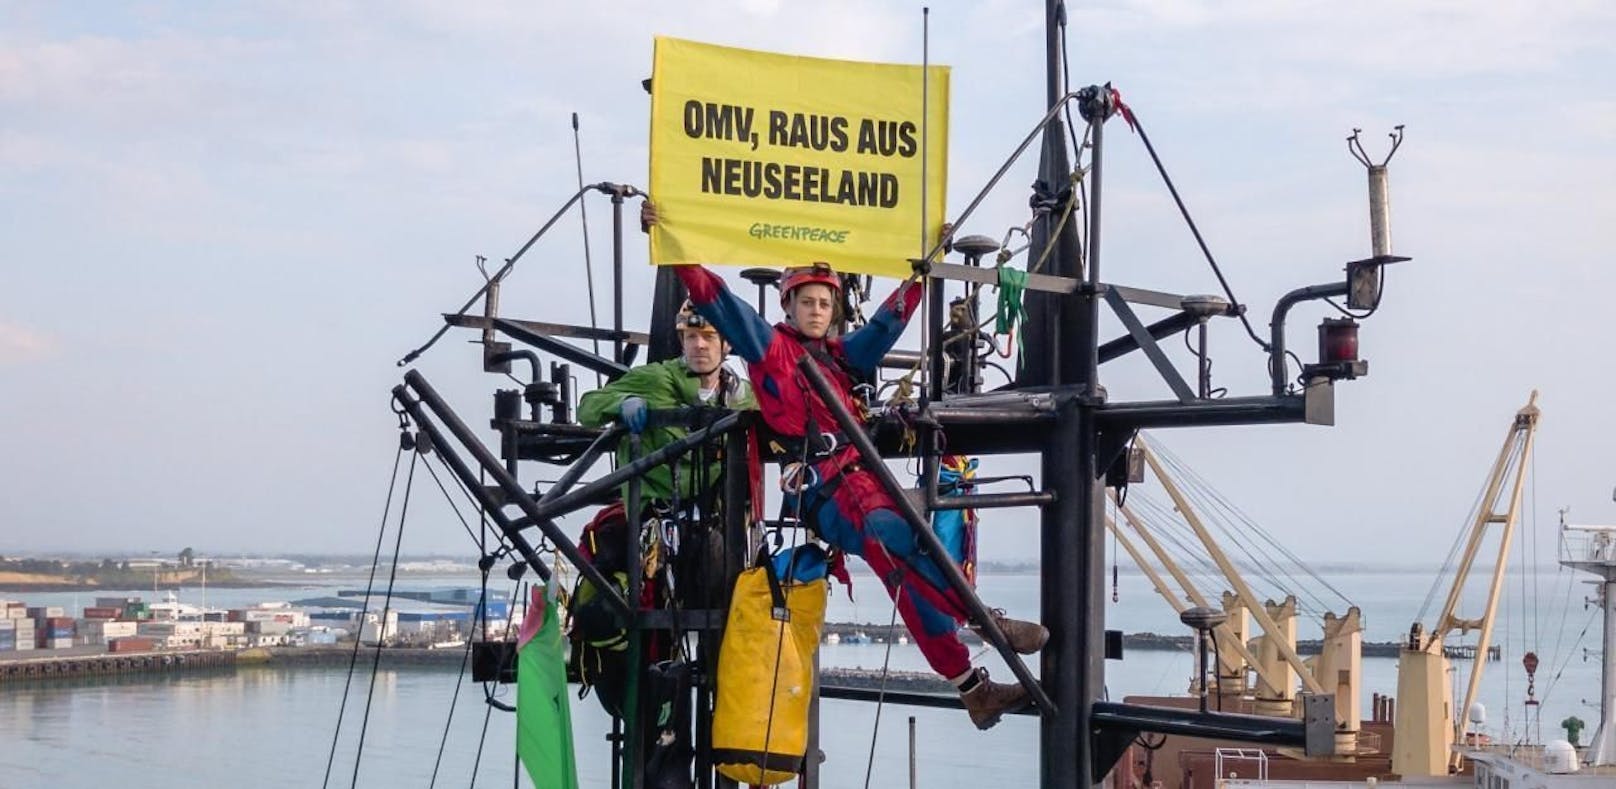 Wiener Umweltaktivistin in Neuseeland verhaftet